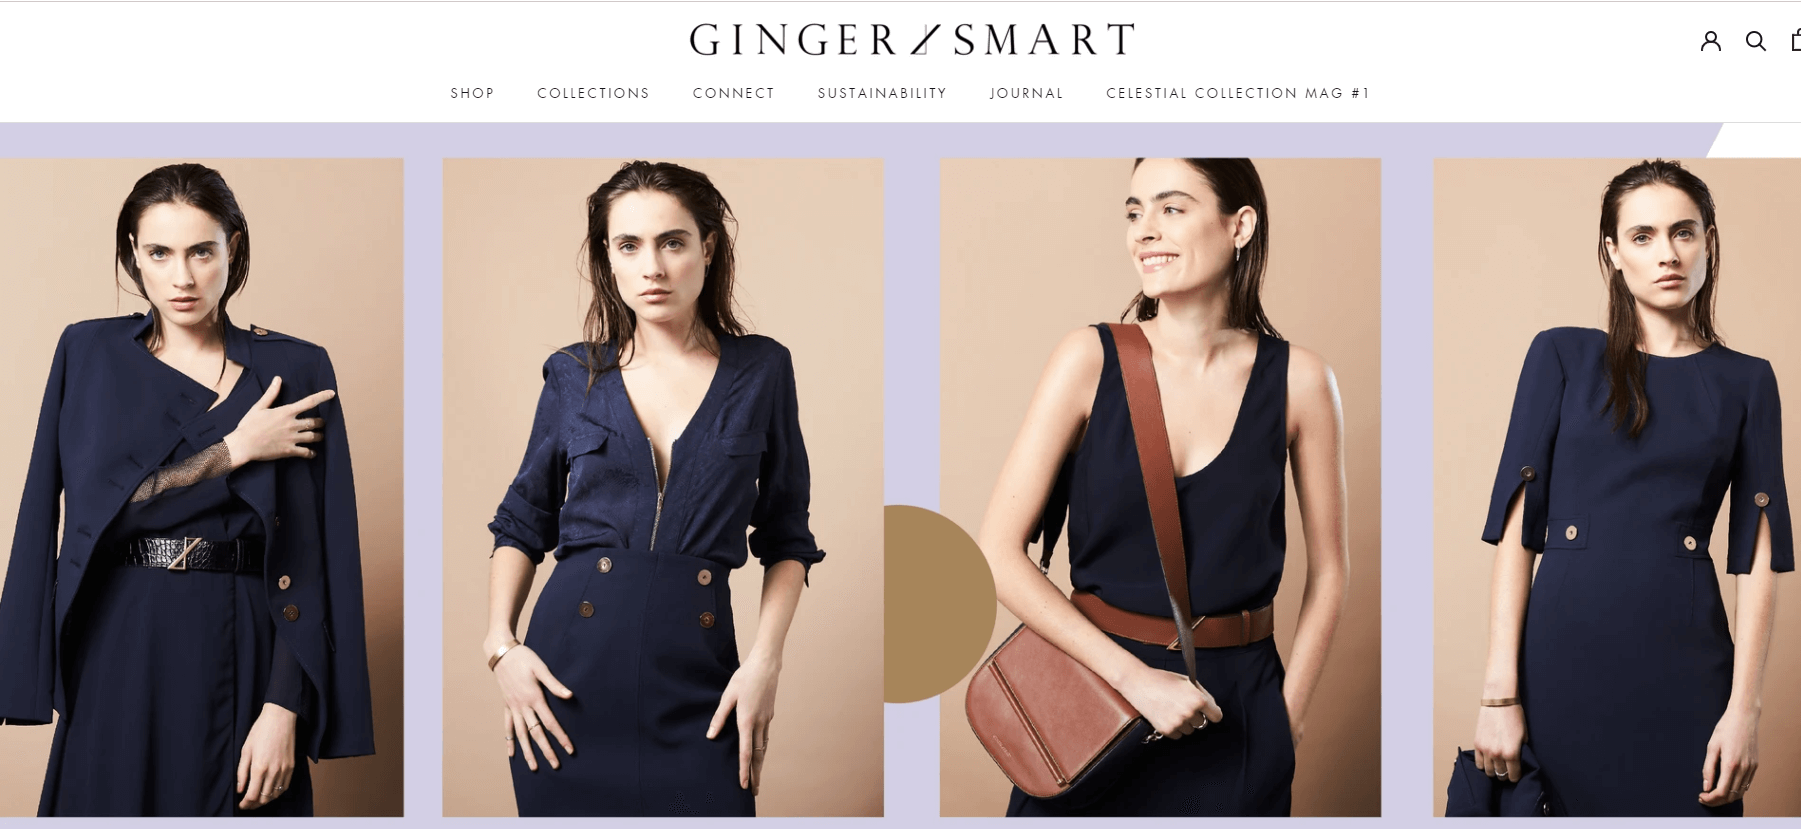 Ginger & Smart官网-澳洲环保奢侈品牌ginger smart 澳大利亚服装业道德协会认可品牌